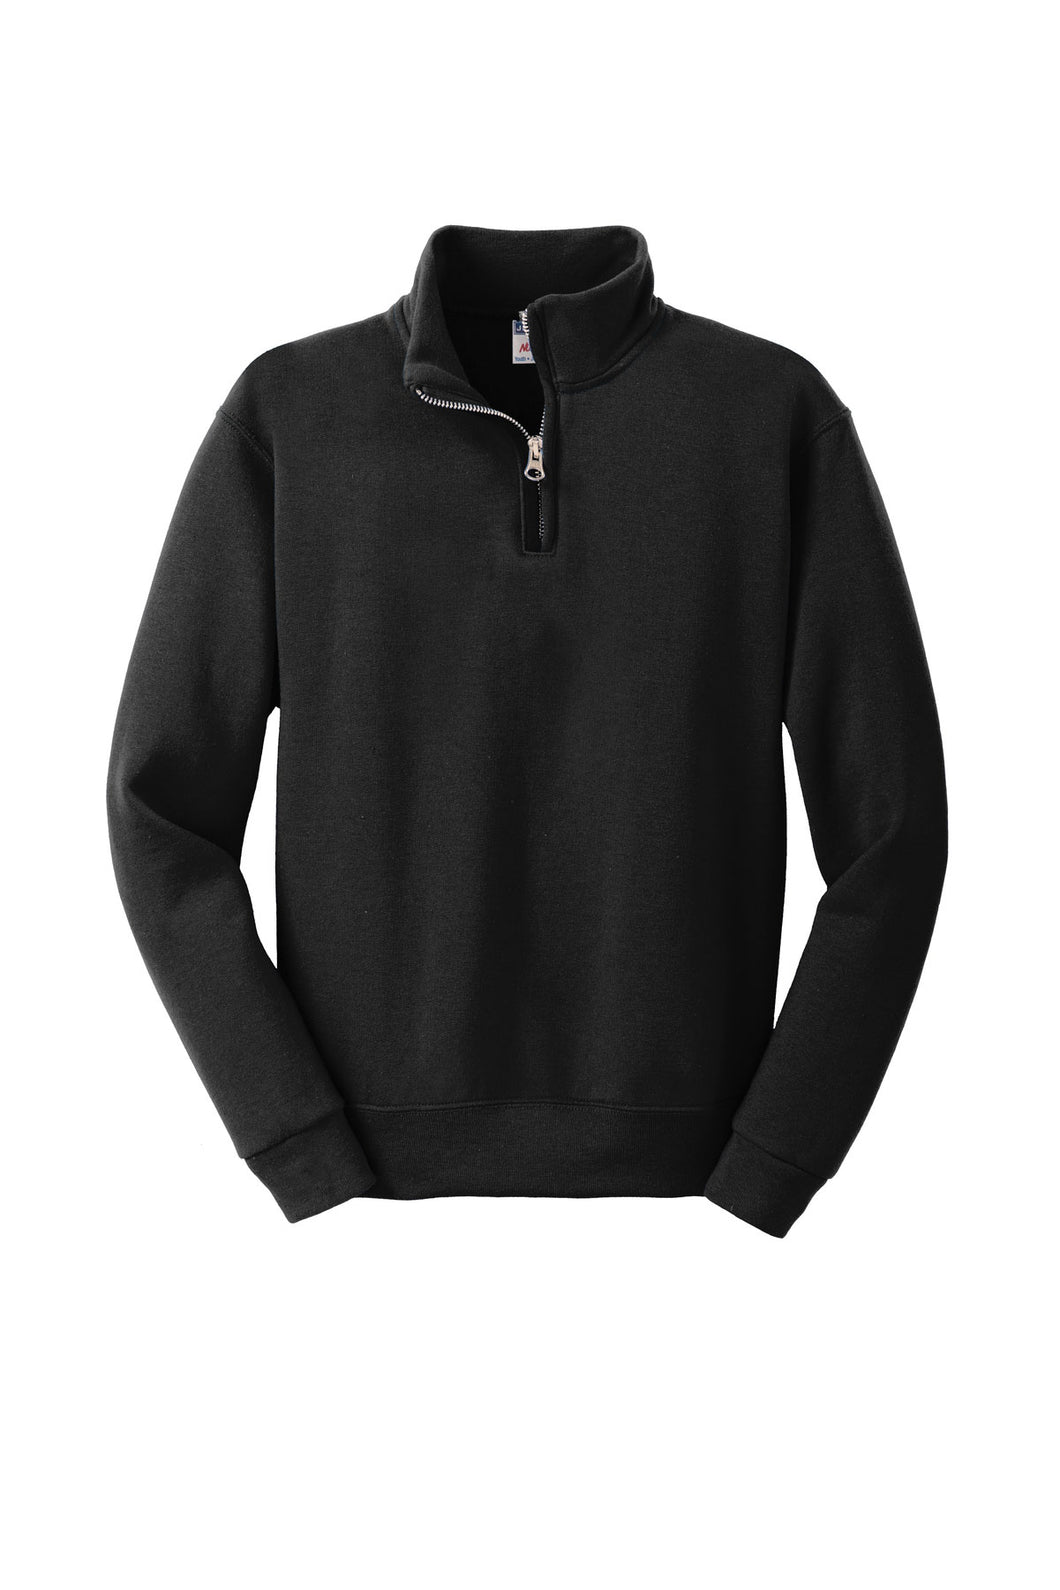 JERZEES® 1/4-Zip Cadet Collar Sweatshirt